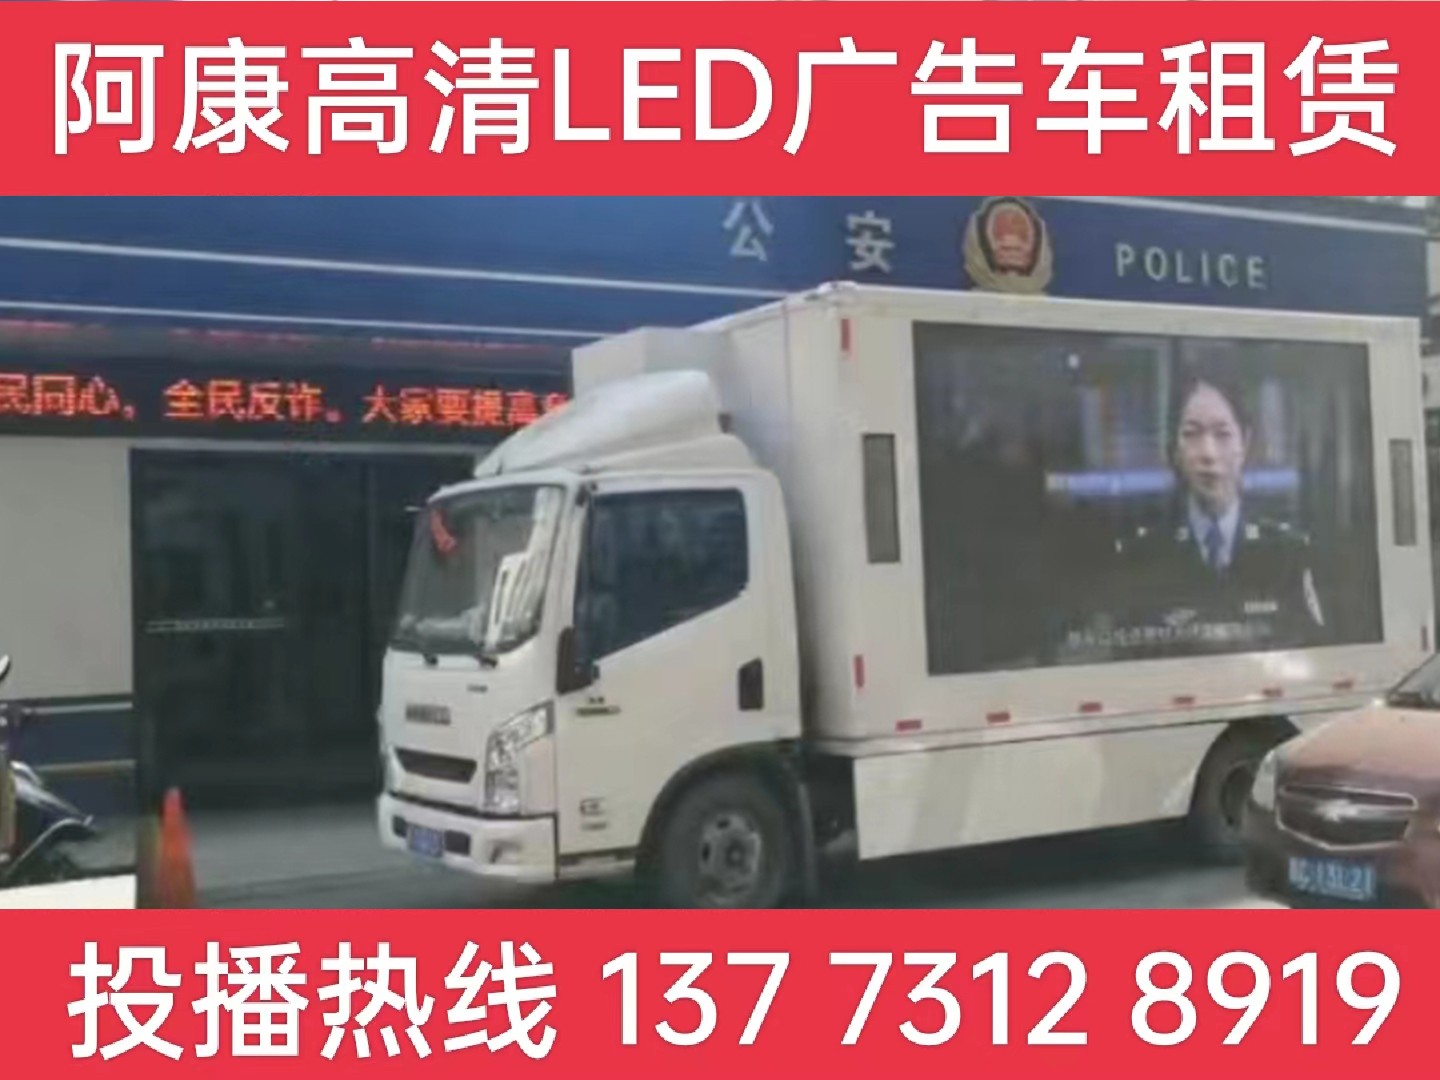 镇江LED广告车租赁-反诈宣传